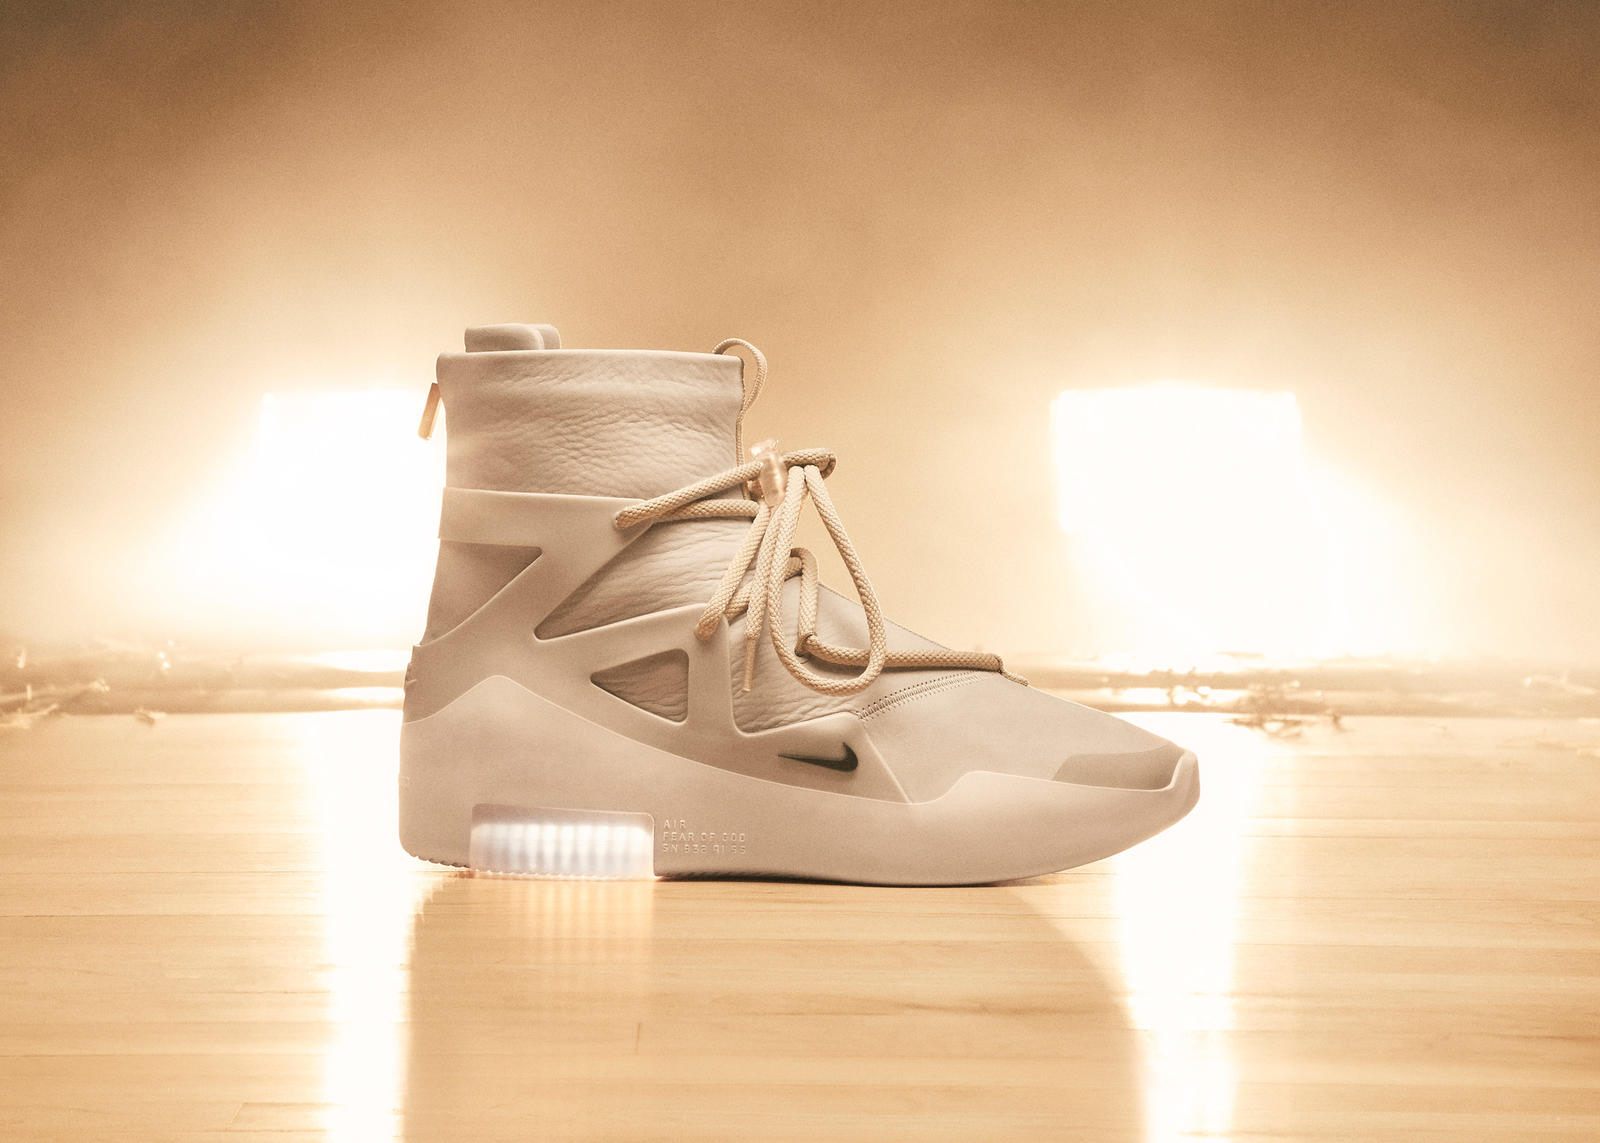 Nike × fear of god - релиз новых кроссовок, модель 2018 года и коллаборация | кроссовки nike fear of god